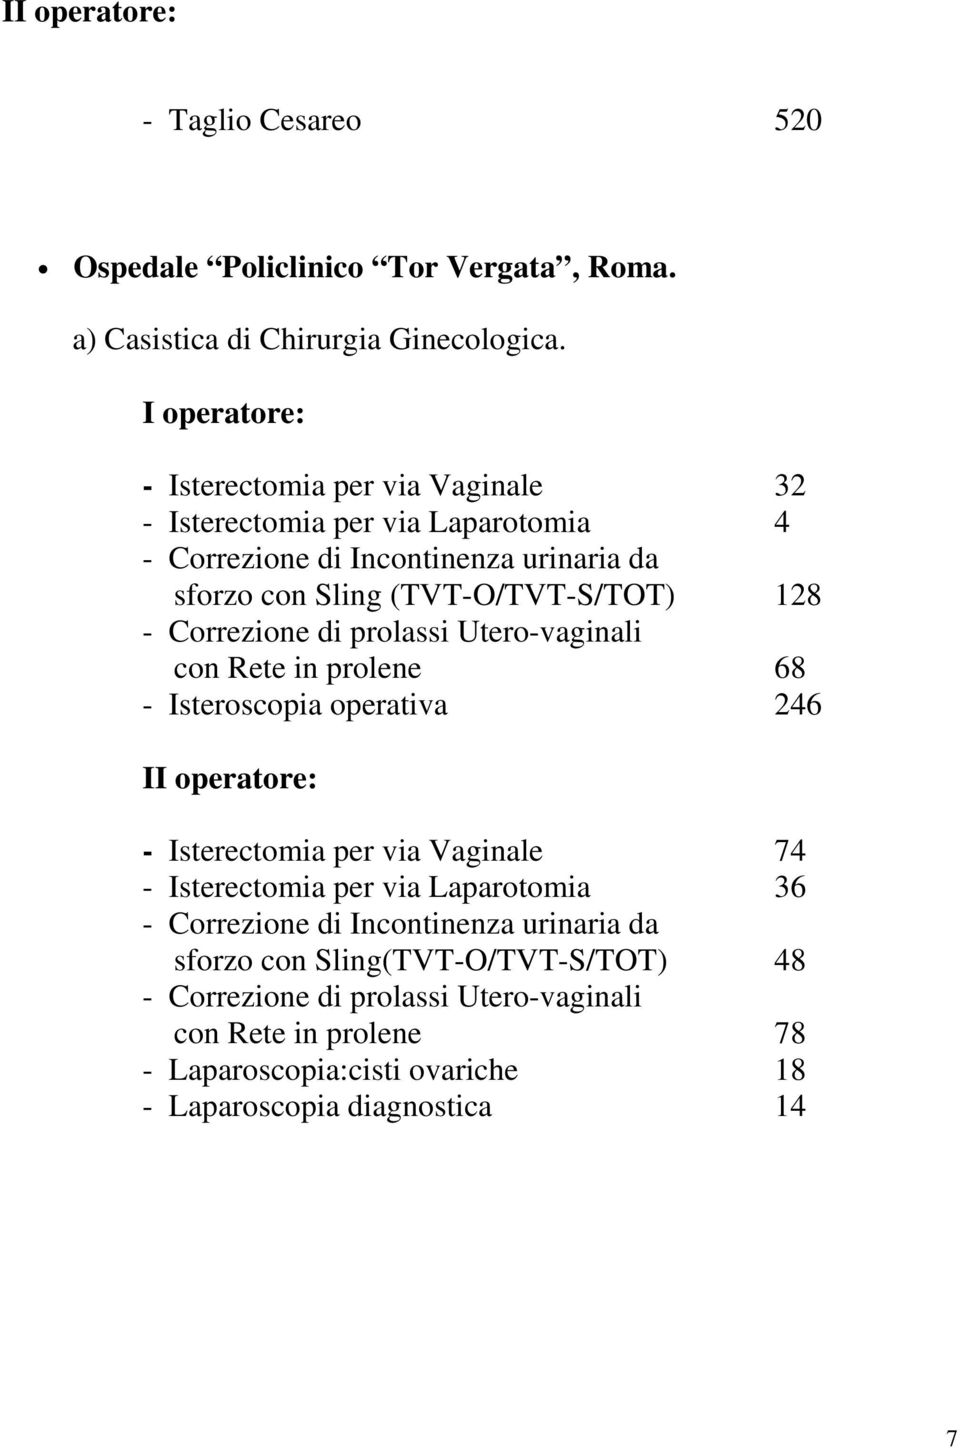 - Correzione di prolassi Utero-vaginali con Rete in prolene 68 - Isteroscopia operativa 246 II operatore: - Isterectomia per via Vaginale 74 - Isterectomia per via